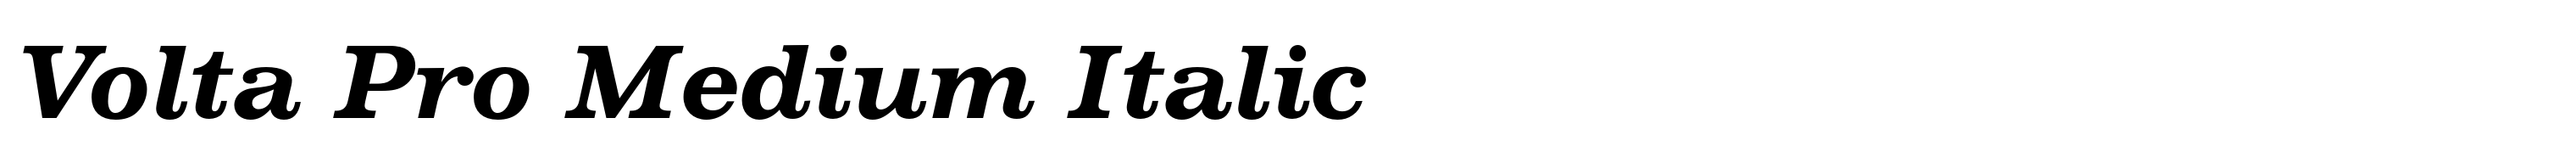 Volta Pro Medium Italic